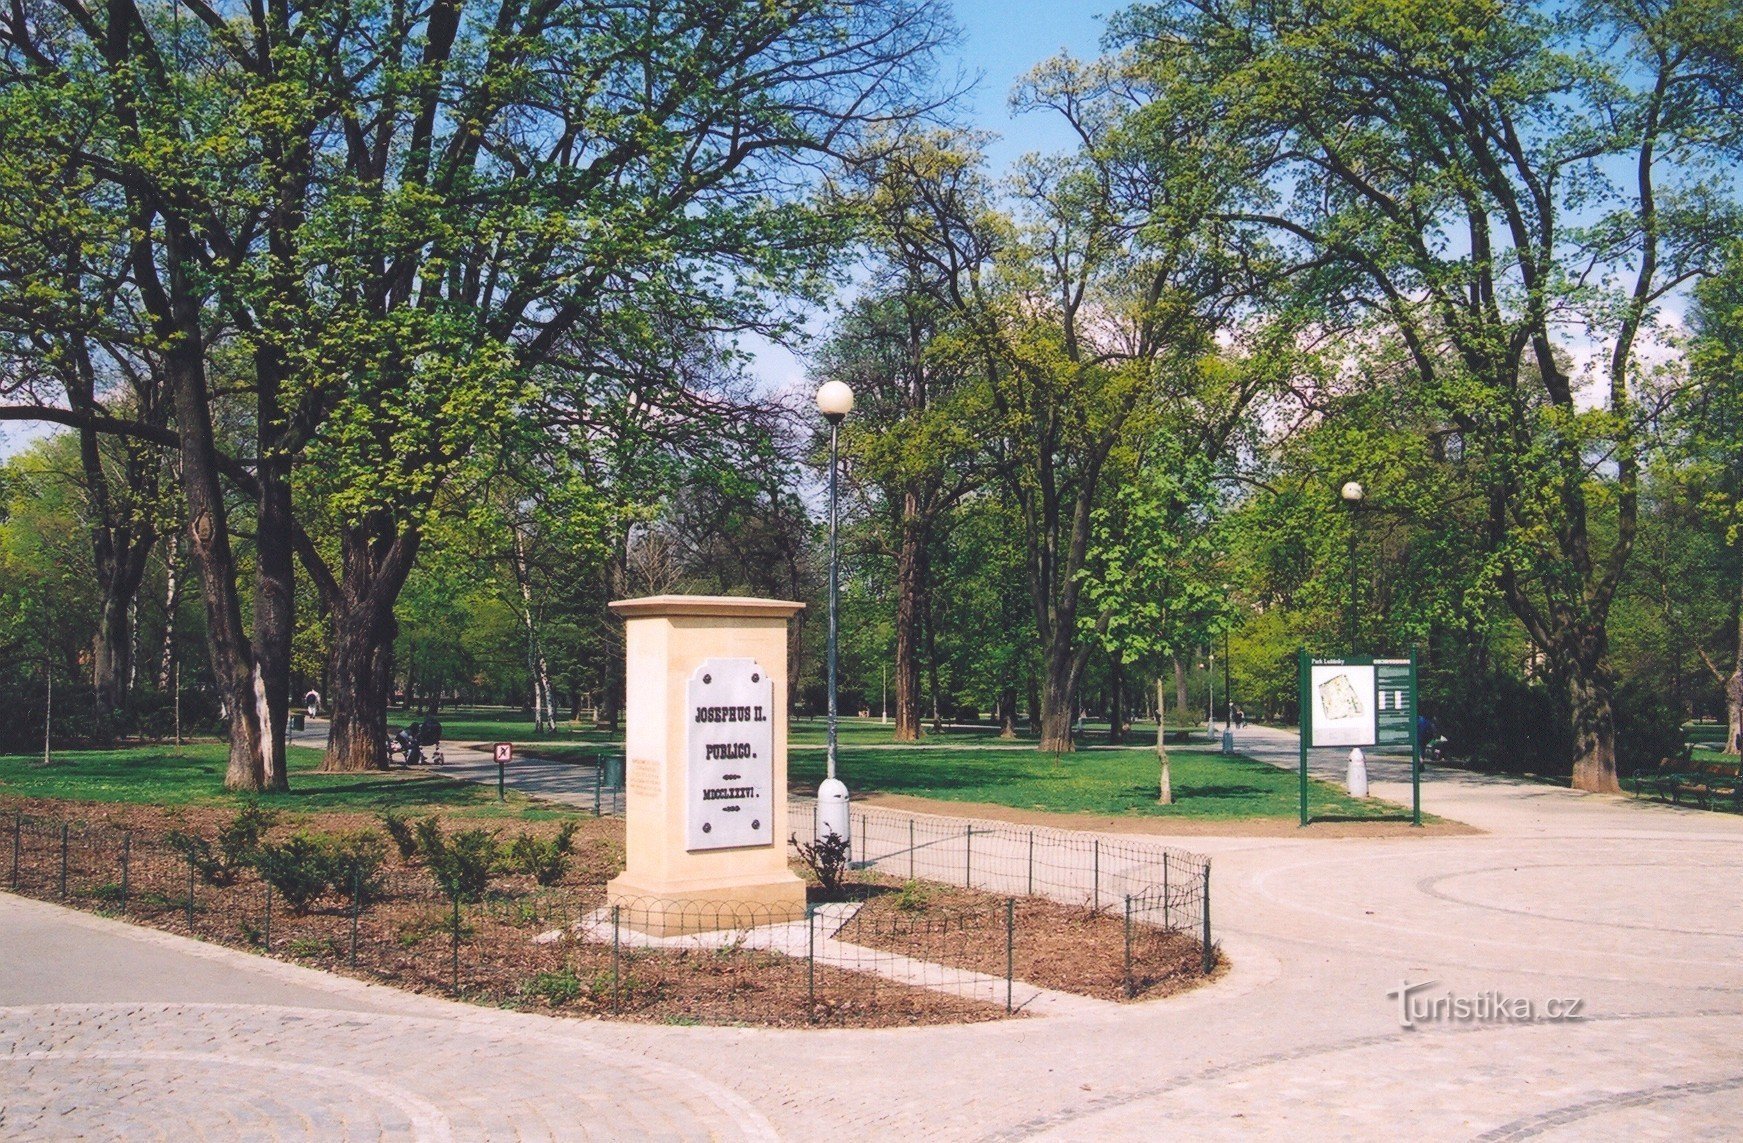 Parcul Lužánky - partea de intrare